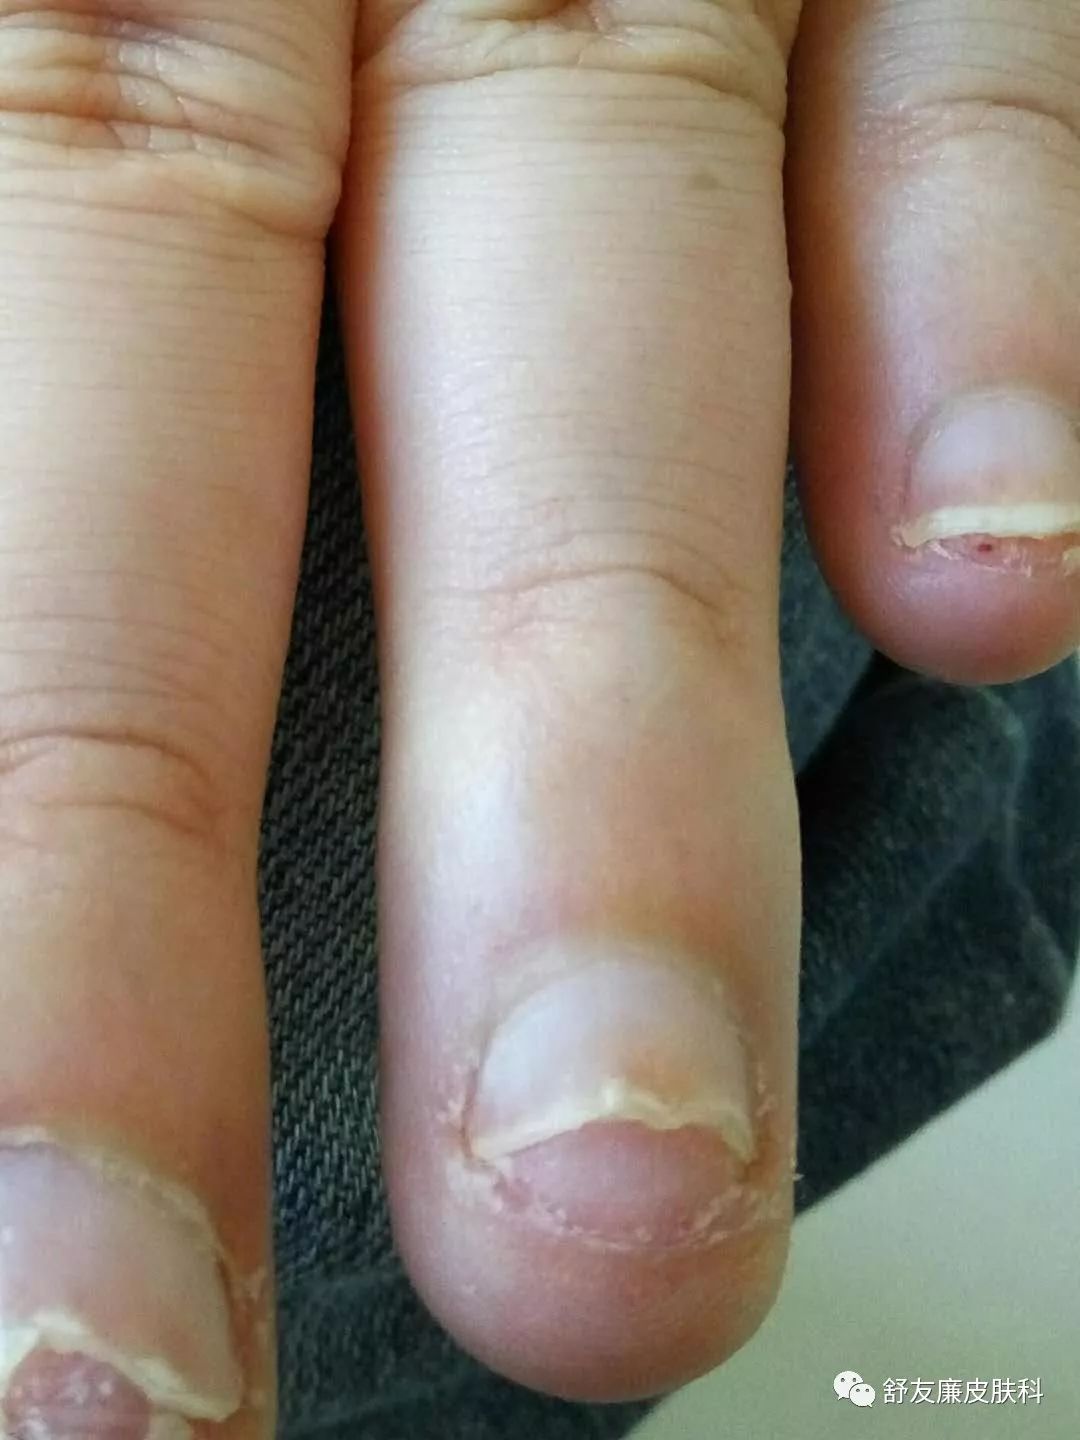 指甲突然有一部分和甲床分离了 不痛不痒为什么？ - 知乎